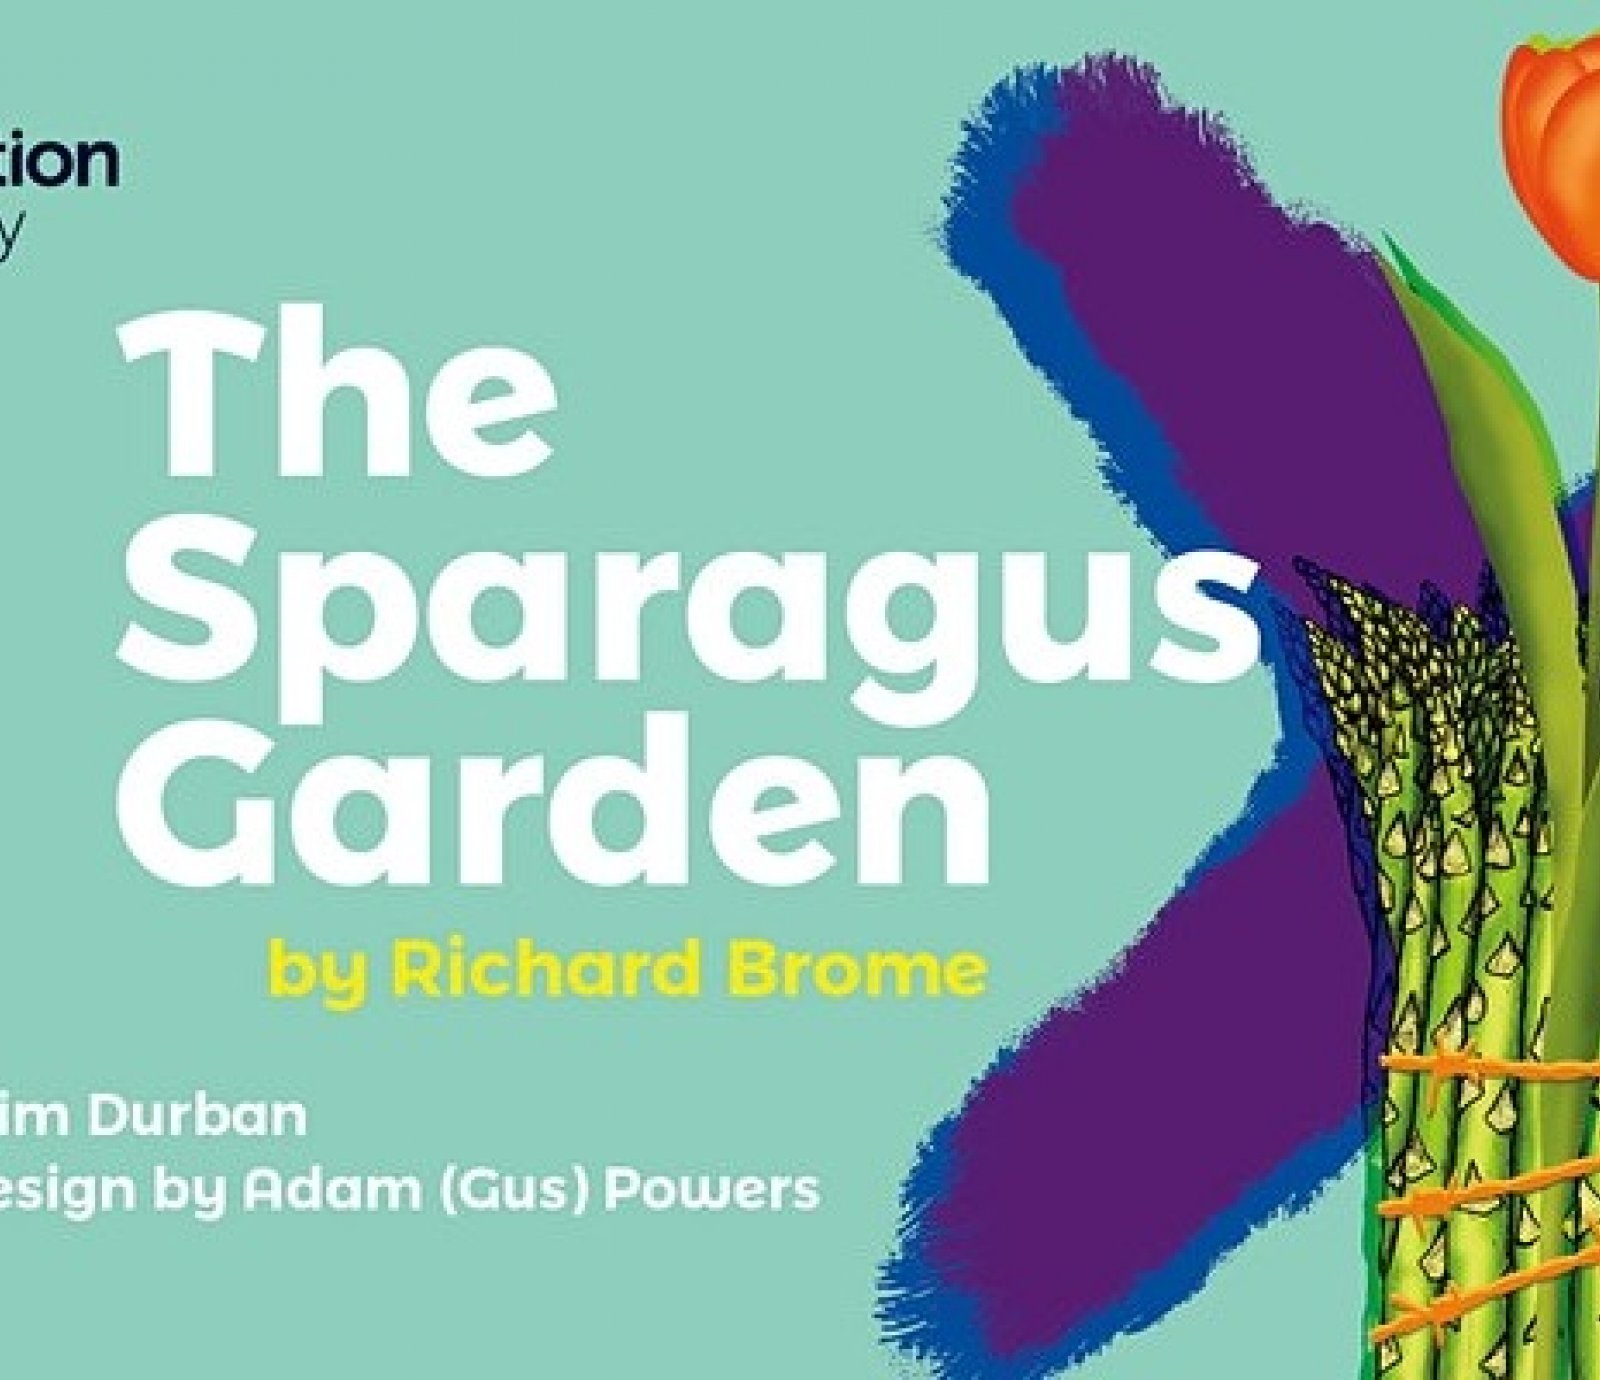 The Sparagus Garden